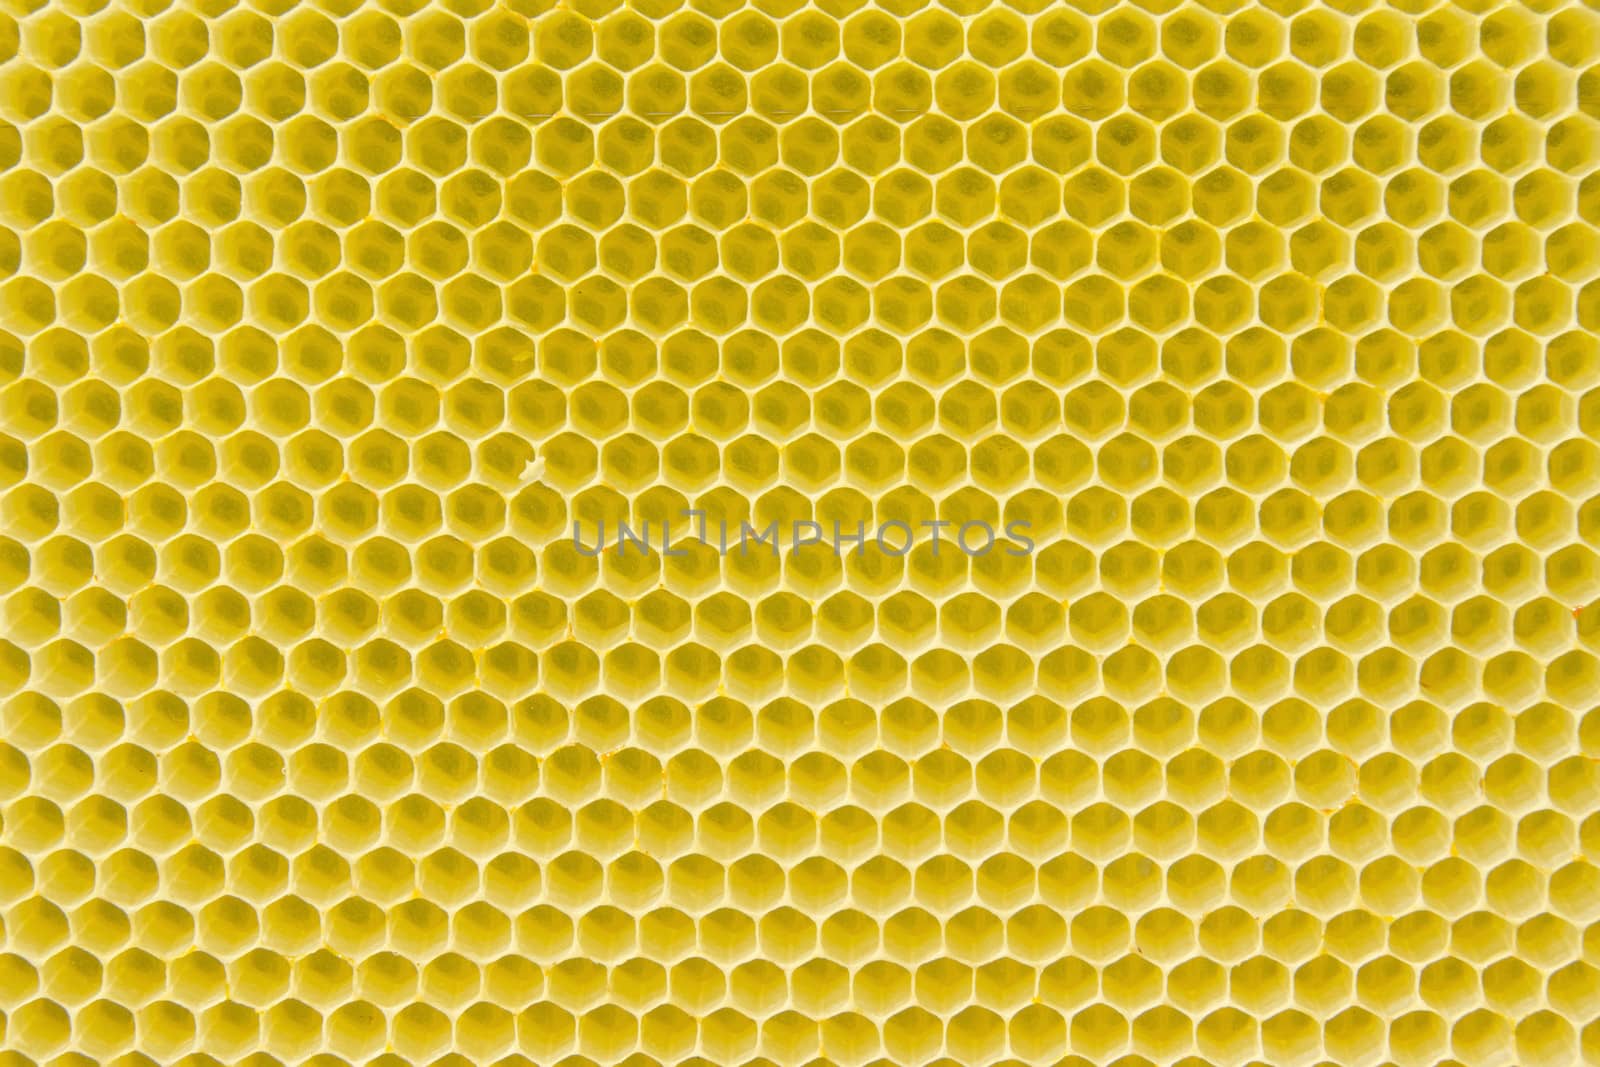 Honeycomb pattern by Arrxxx